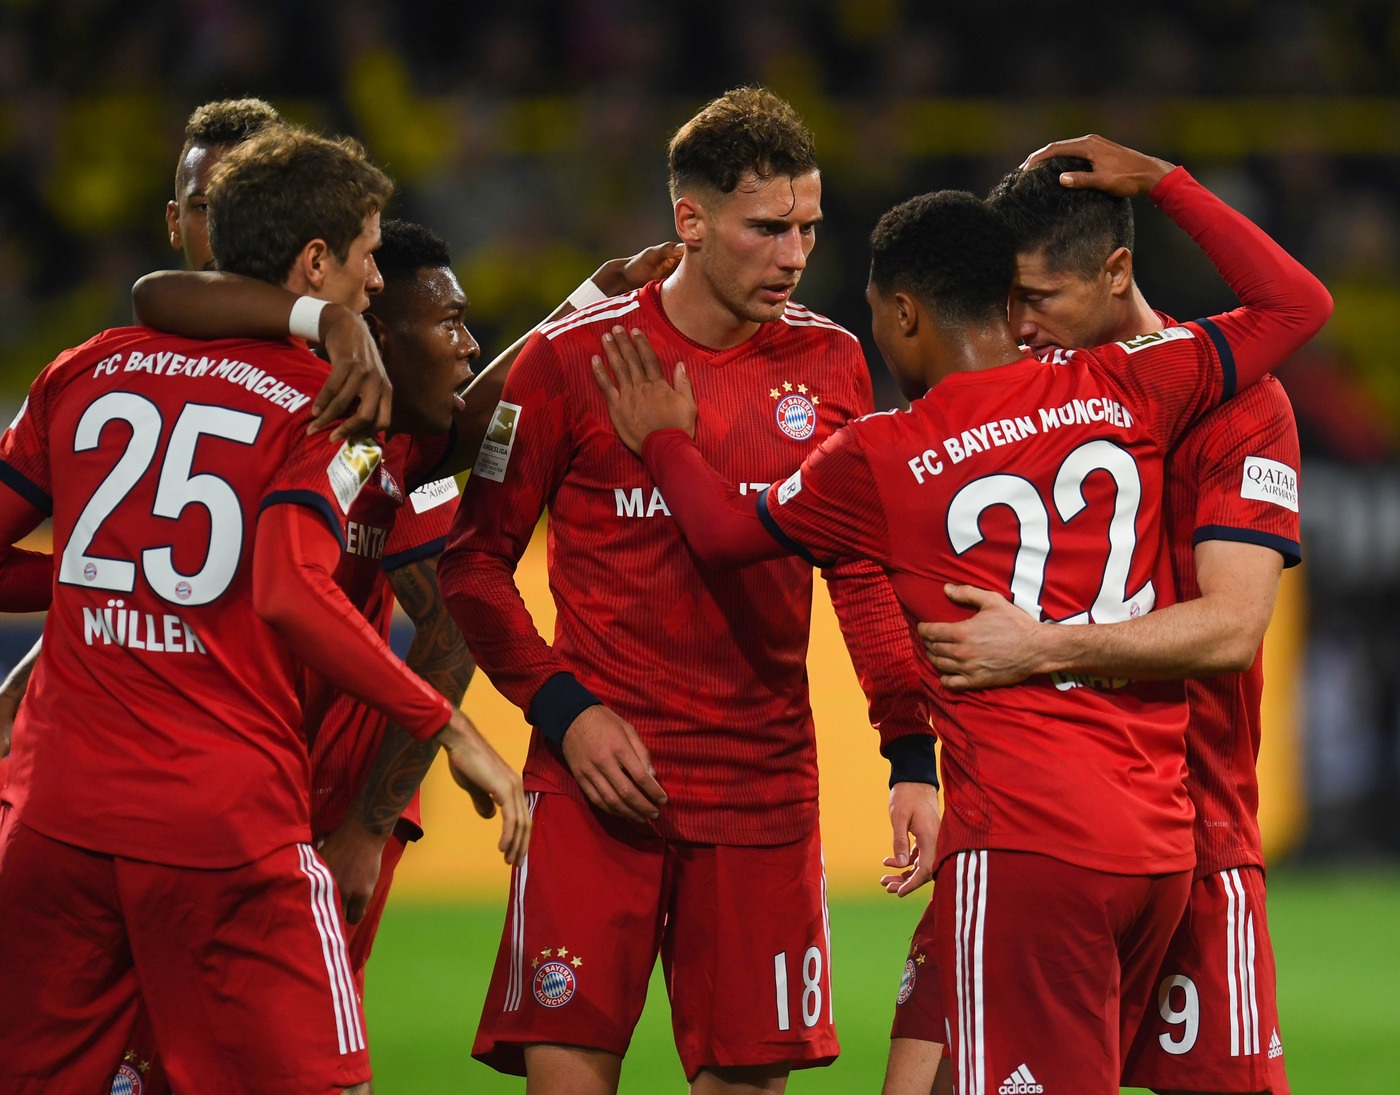 Germania DFB Pokal, Bayern-Heidenheim 3 aprile: analisi e pronostico degli ottavi di finale della coppa nazionale tedesca